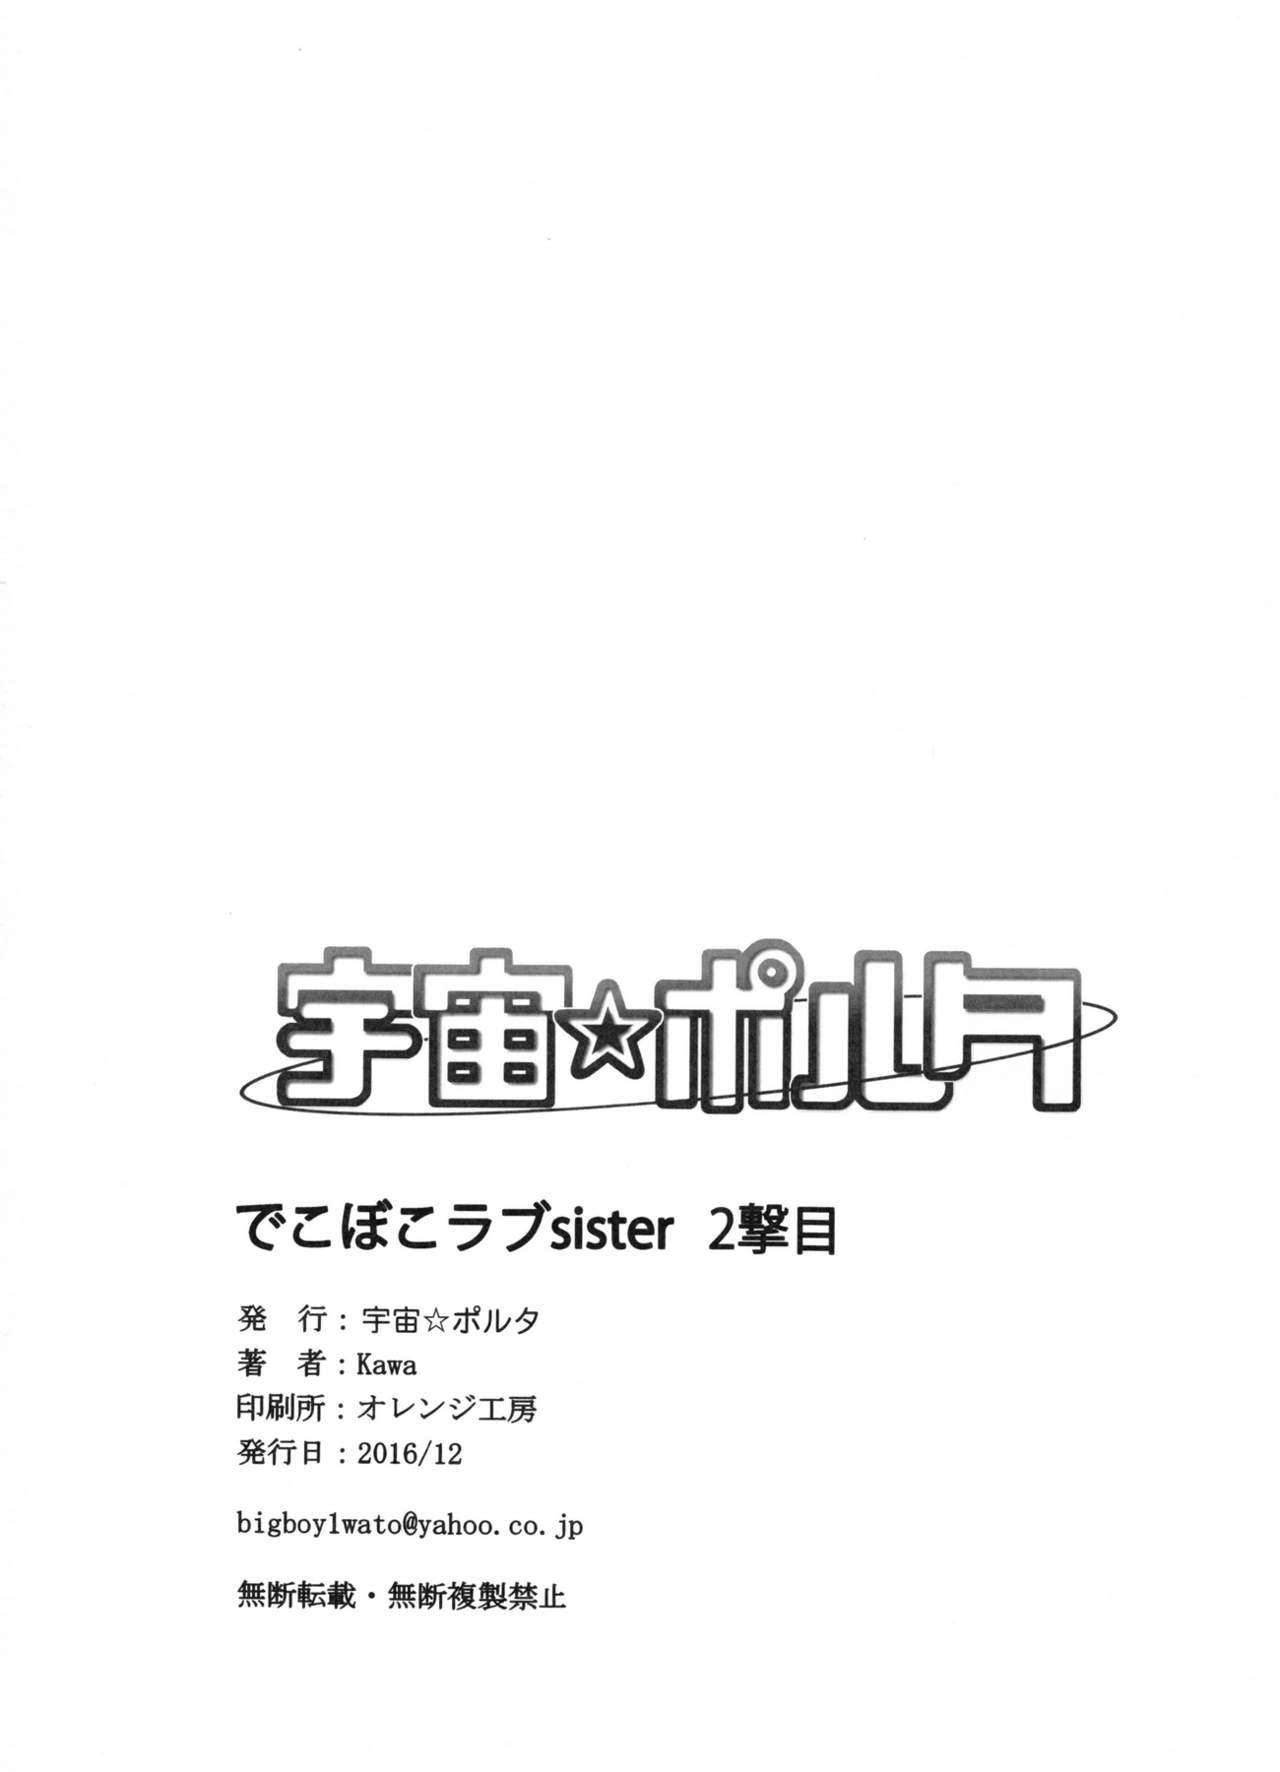 Vadia Dekoboko Love Sister 2-gekime! - One punch man Teenager - Page 25